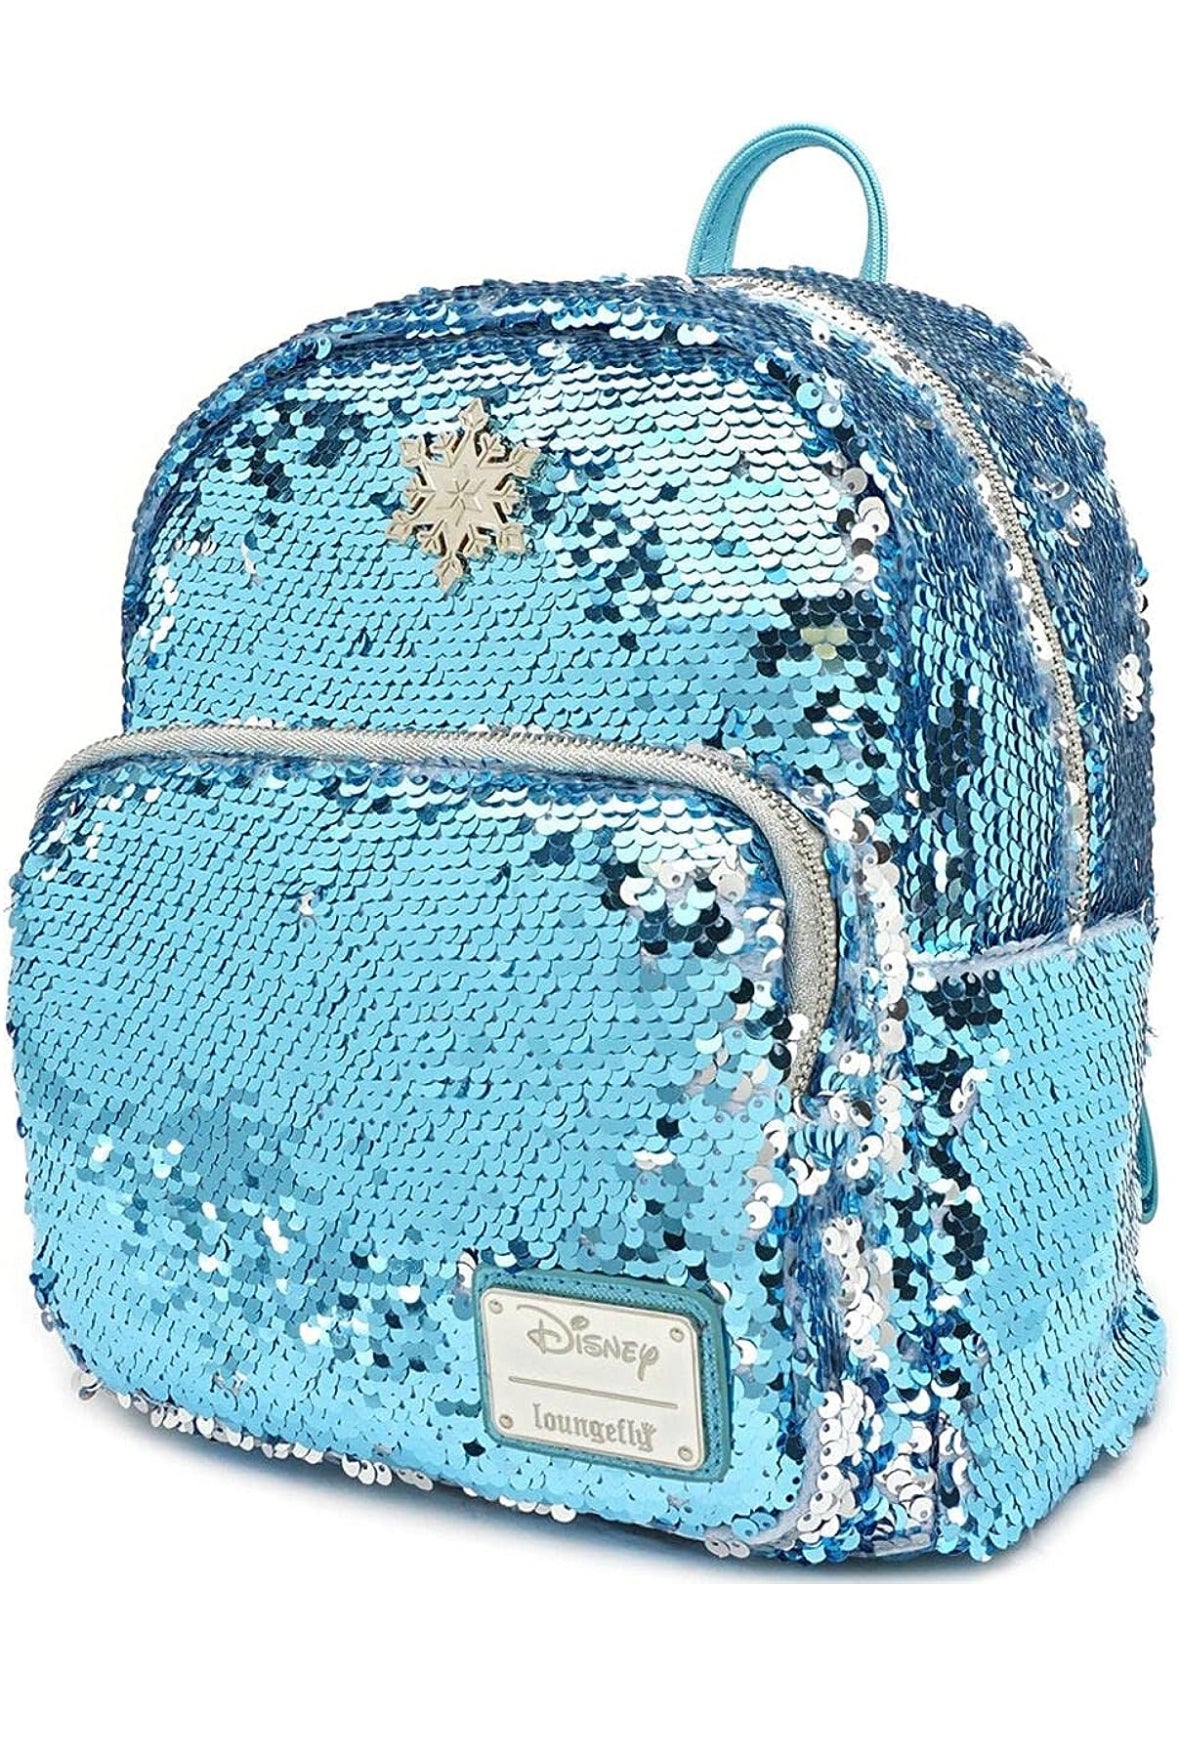 Loungefly Disney Frozen Elsa Reversible Sequin Mini Backpack